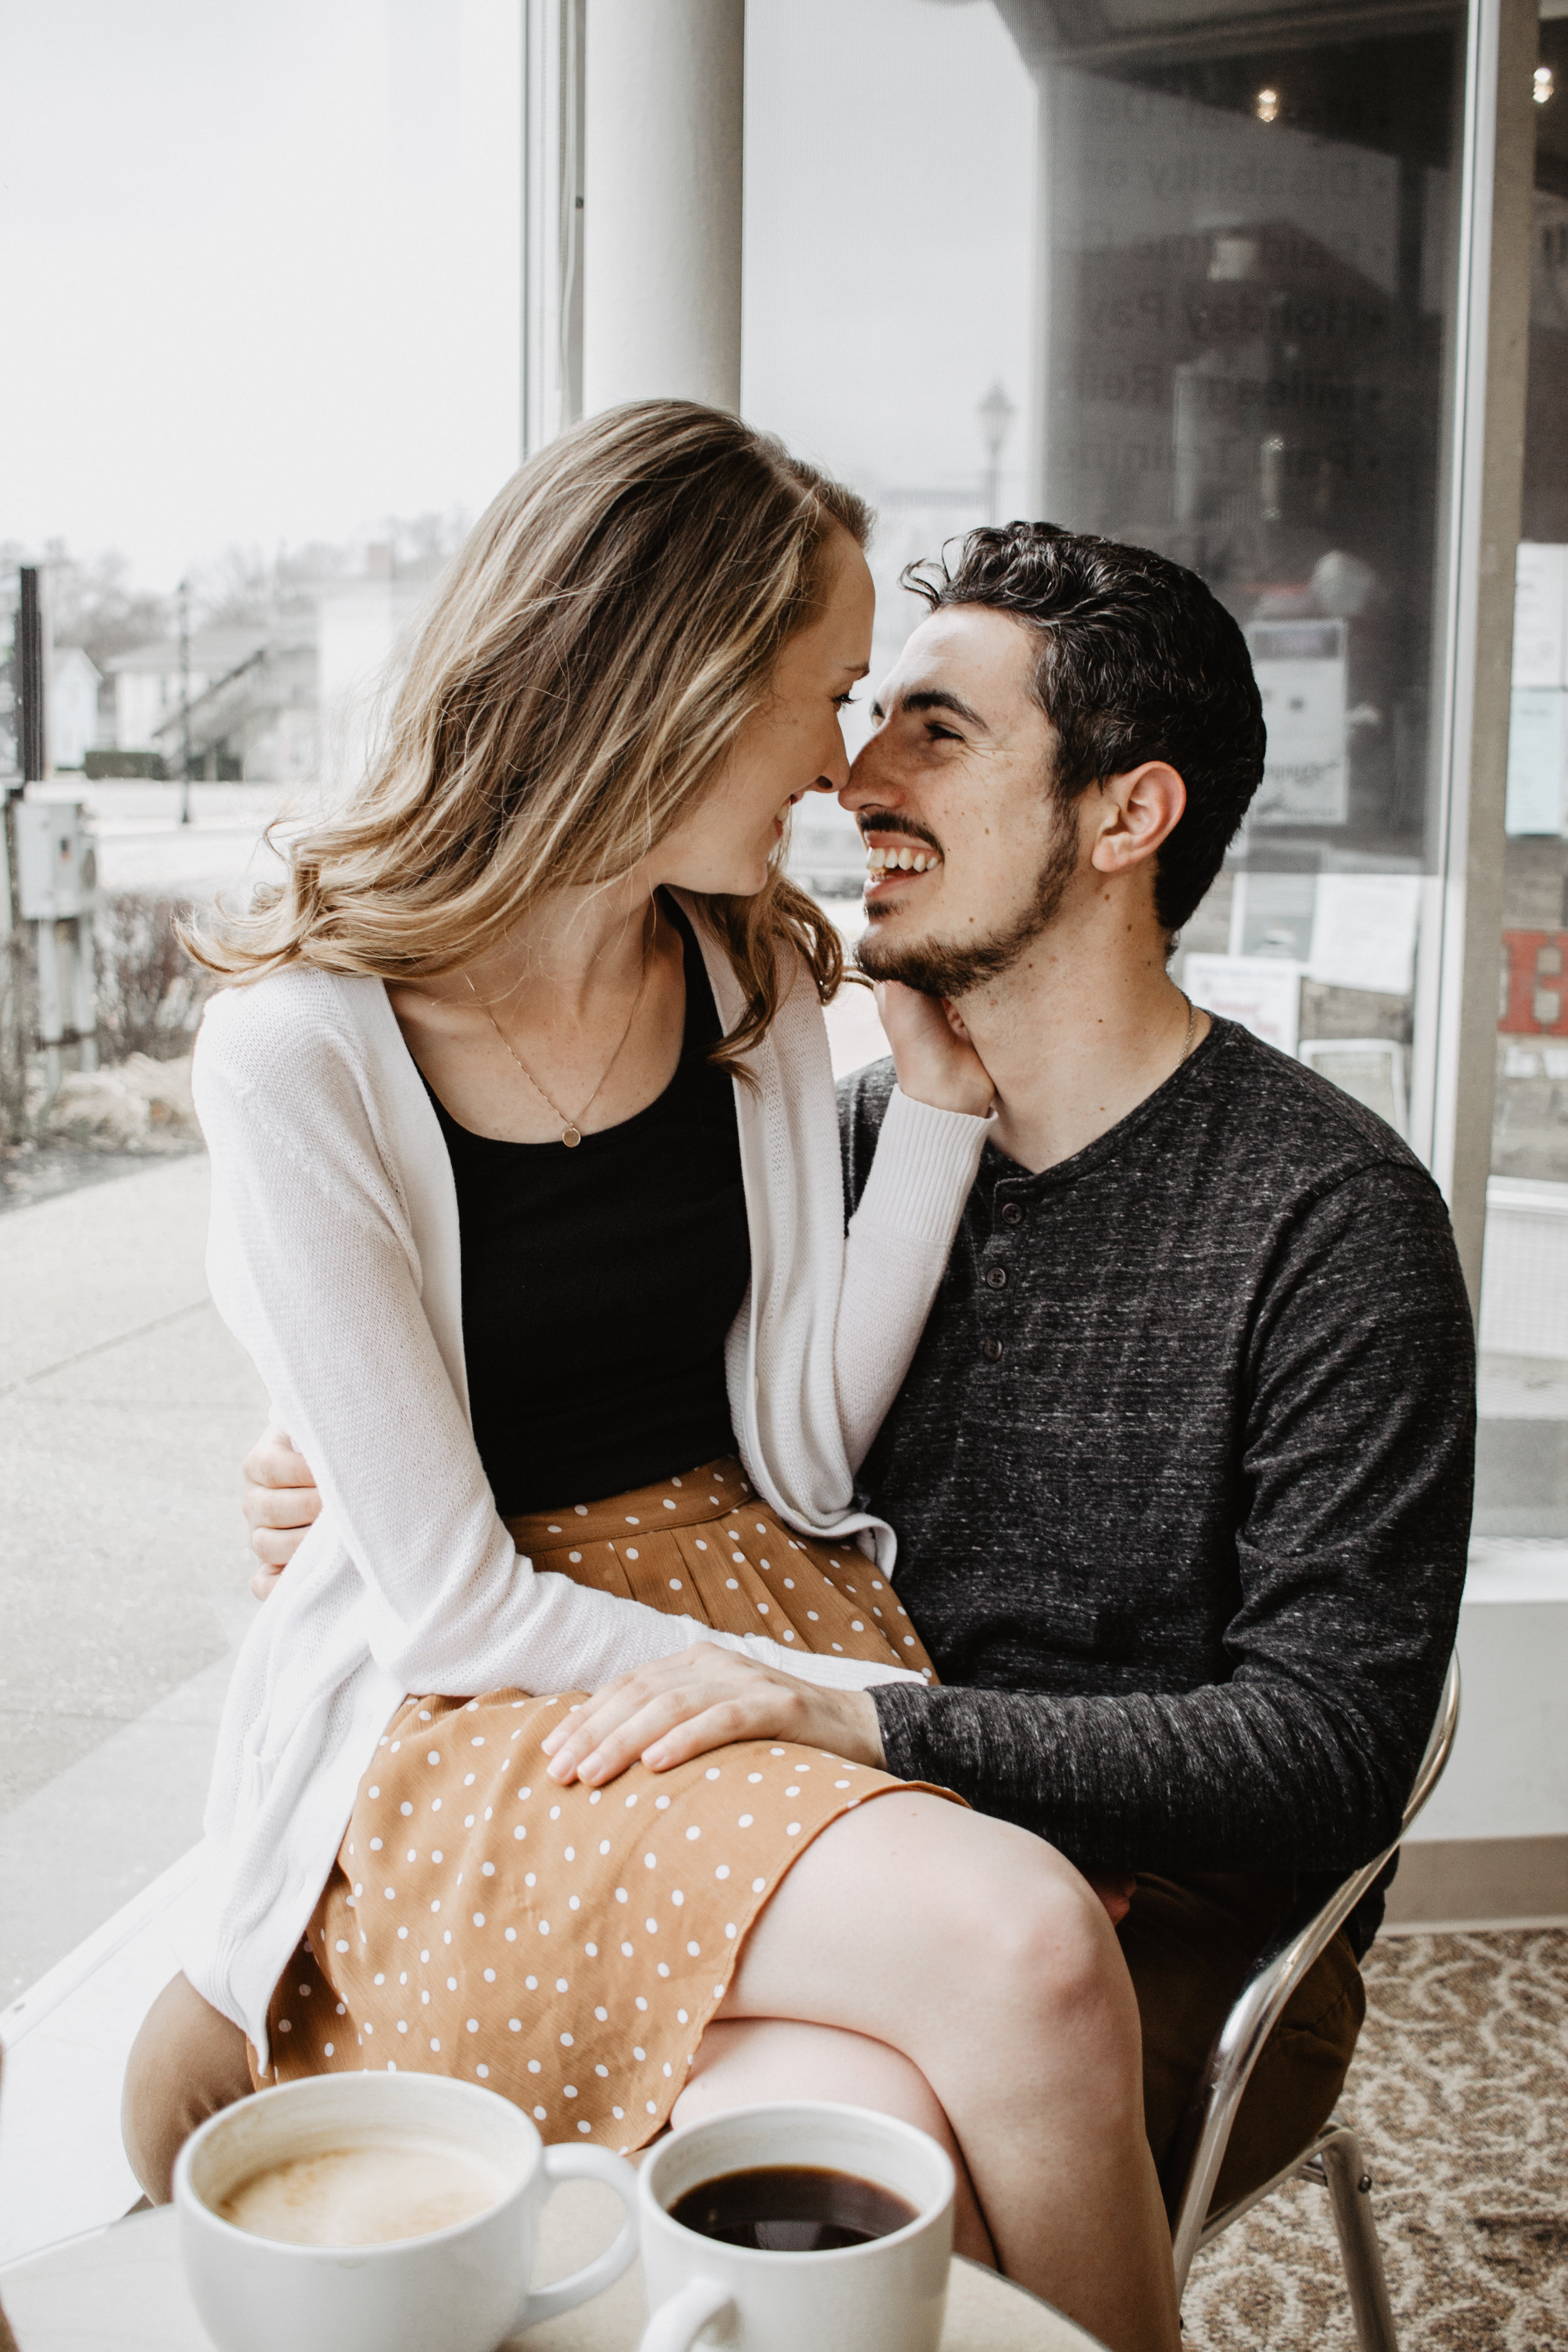 Josiah + Mackenzie | Engagement | Ohio Wedding + Engagement Photographer | Catherine Milliron Photography